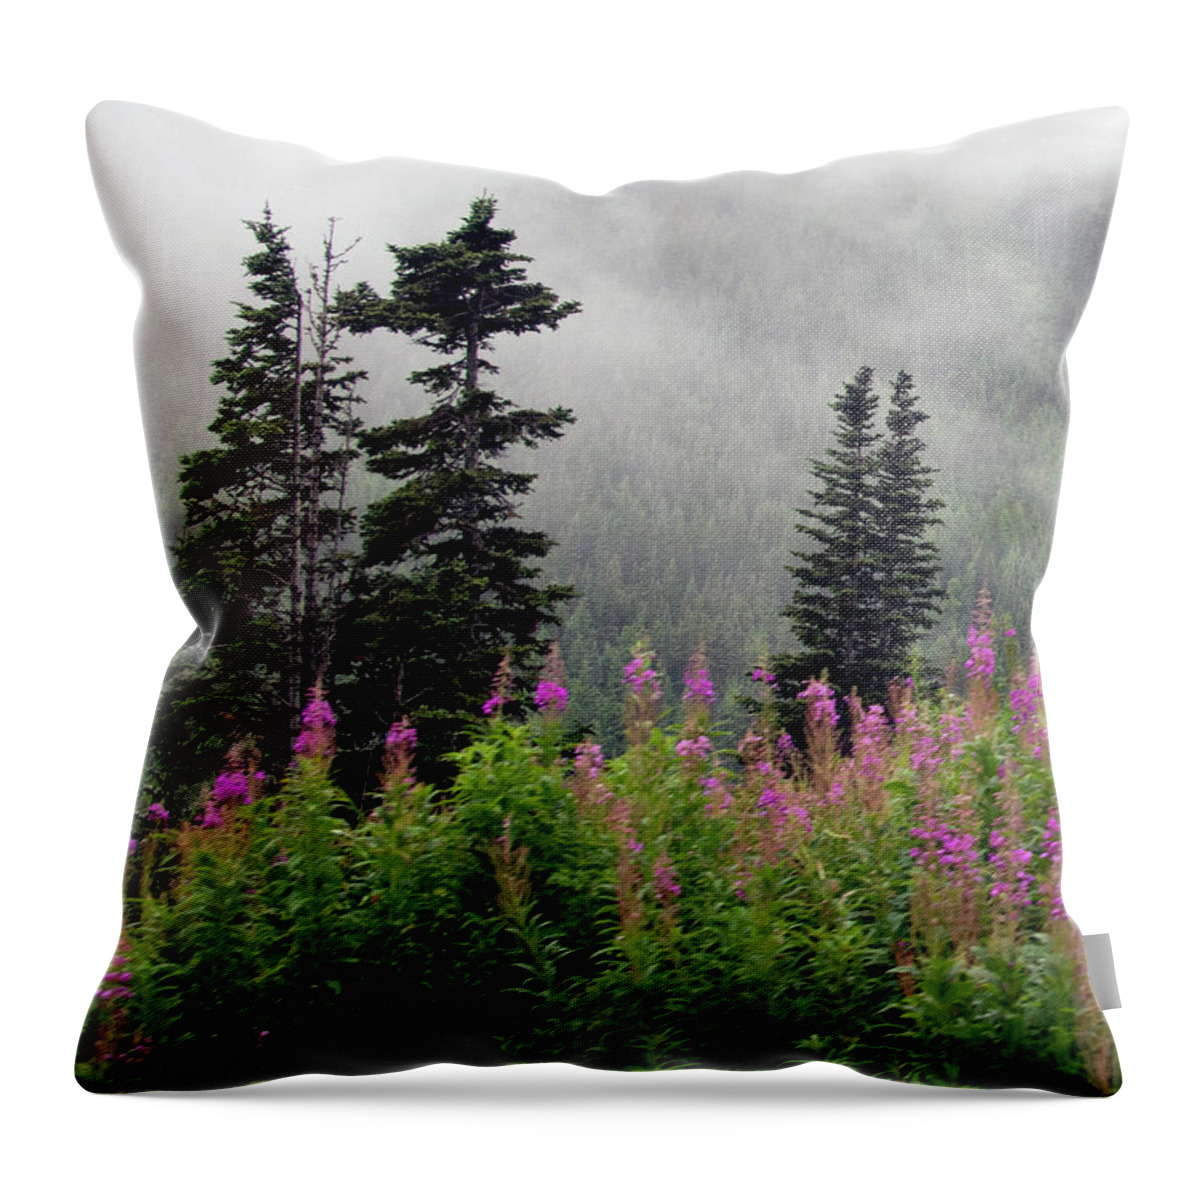 Skagway Throw Pillow featuring the photograph Alaska Pines and Wildflowers by Karen Zuk Rosenblatt